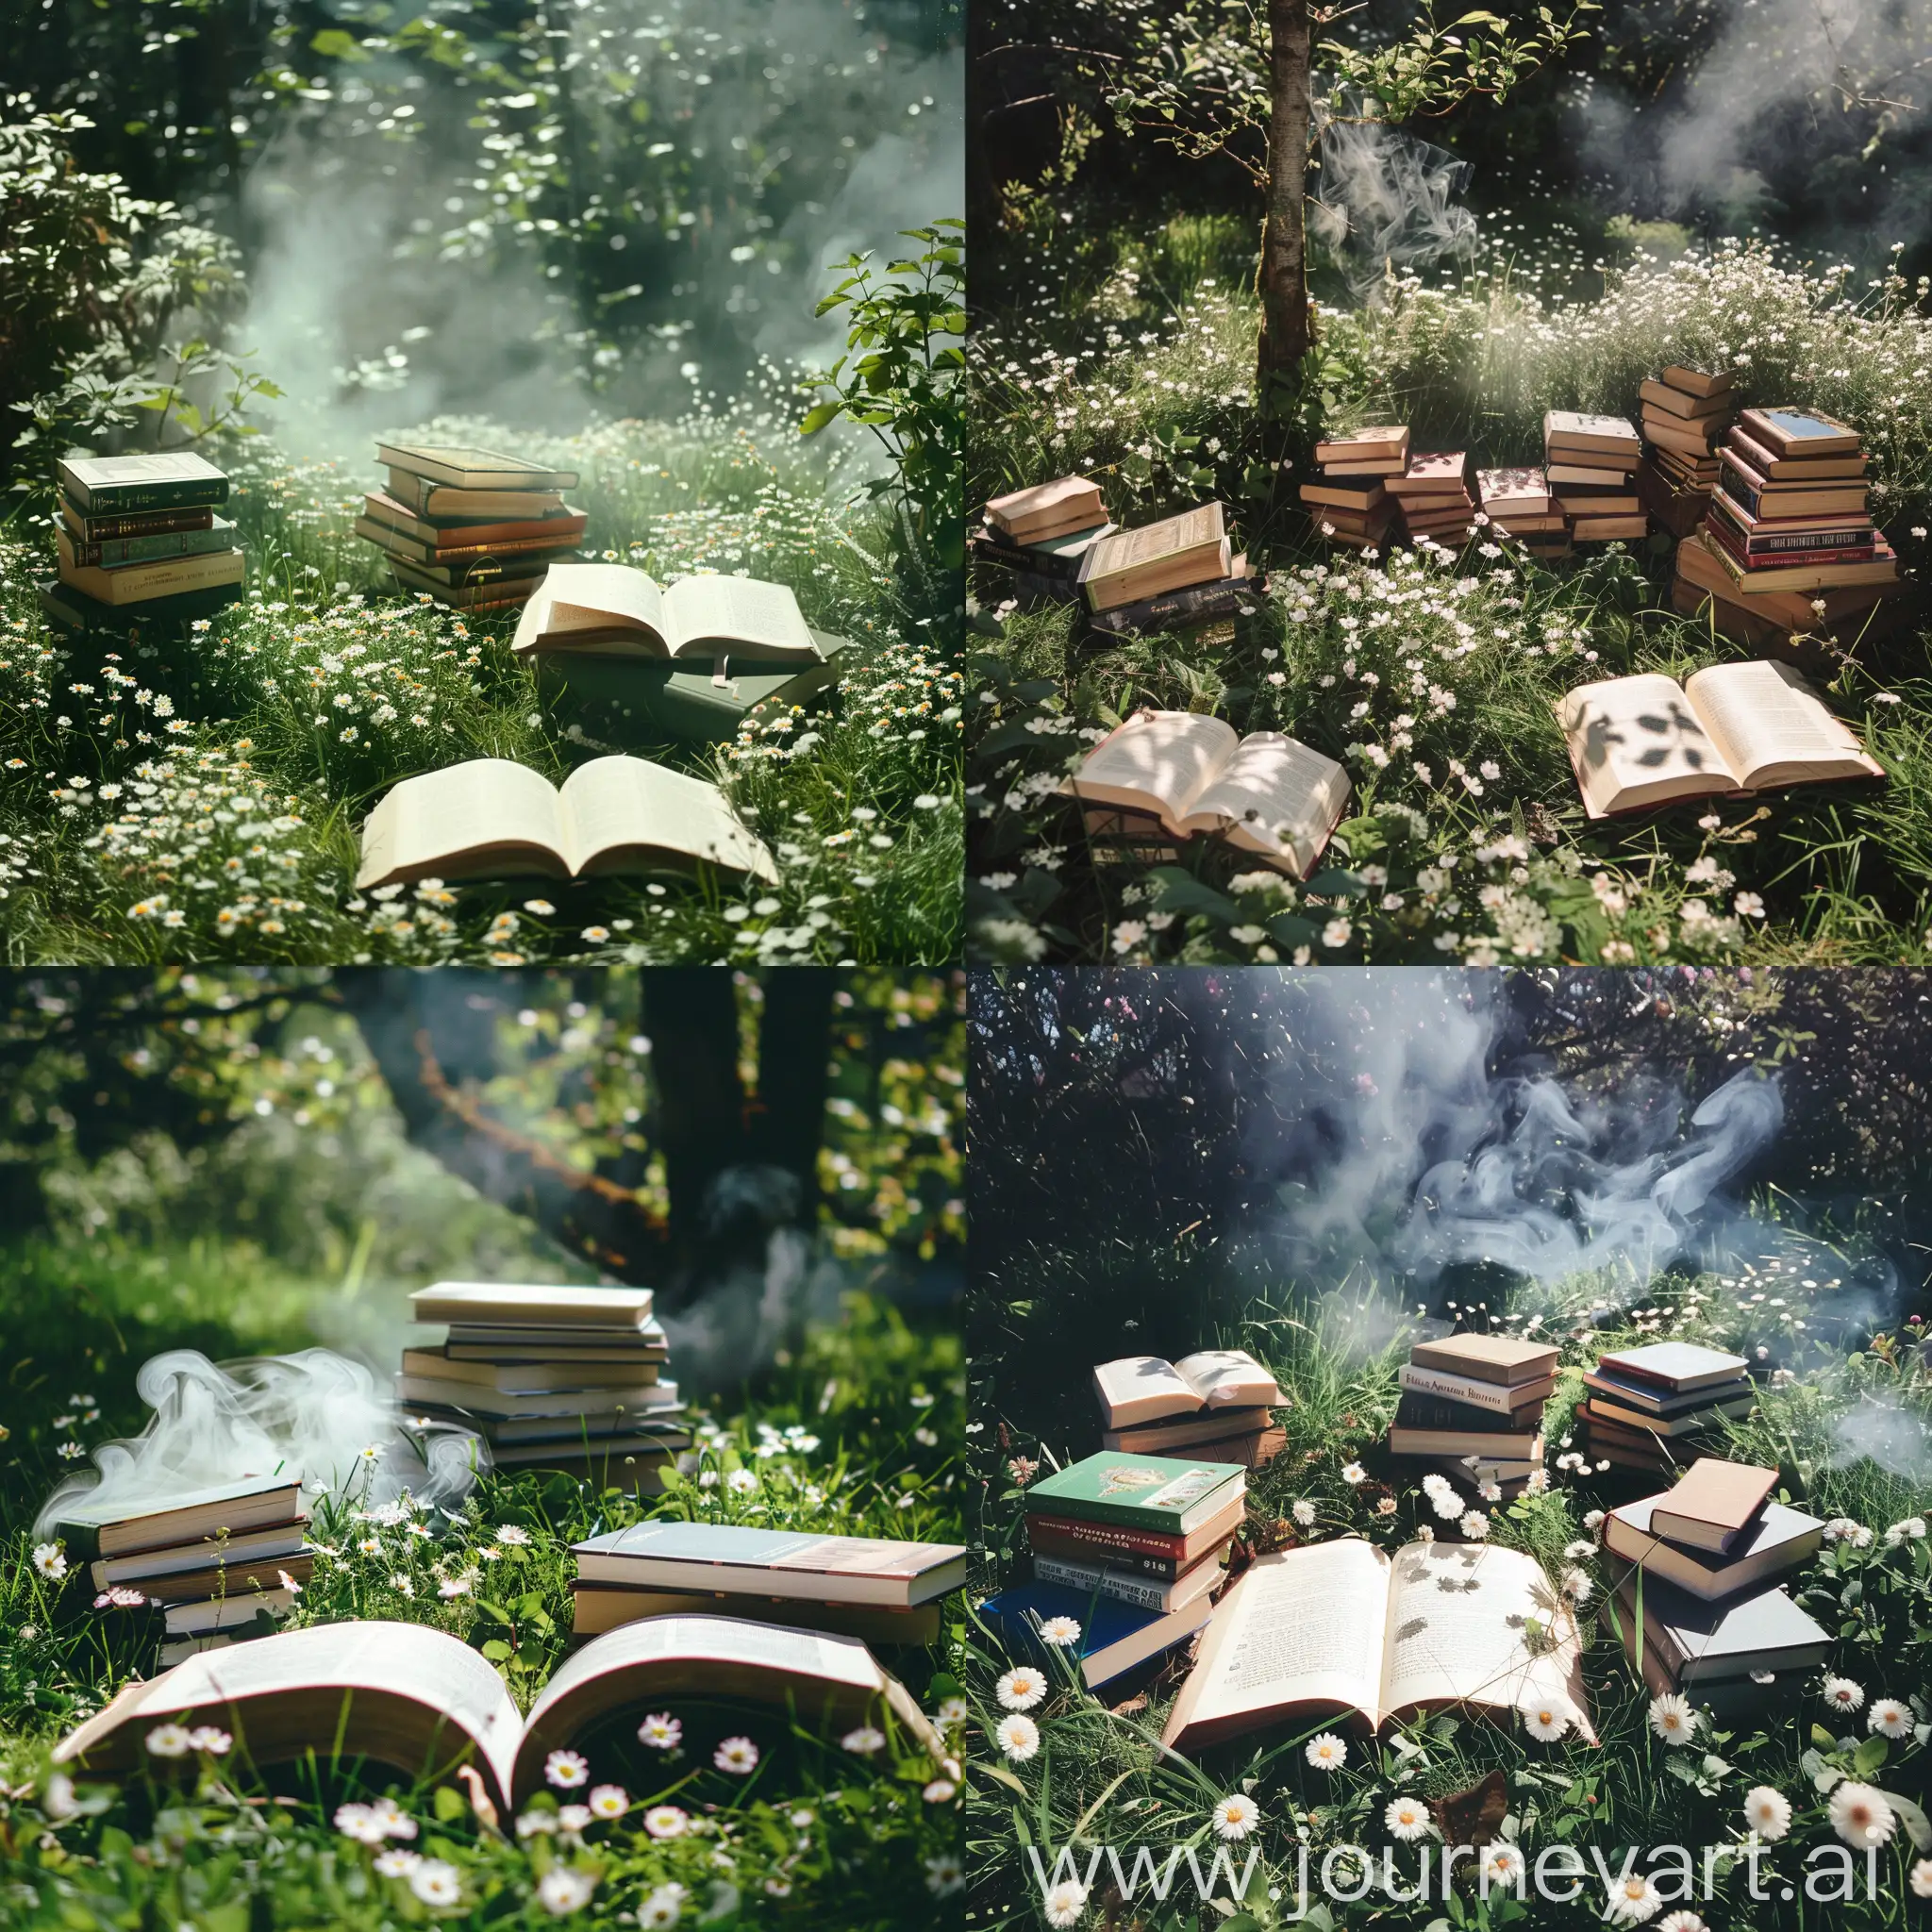 Книги на зелёной траве, в некоторых местах белые маленькие цветочки, открытая книга и рядом стопка в дыму. Солнечная погода